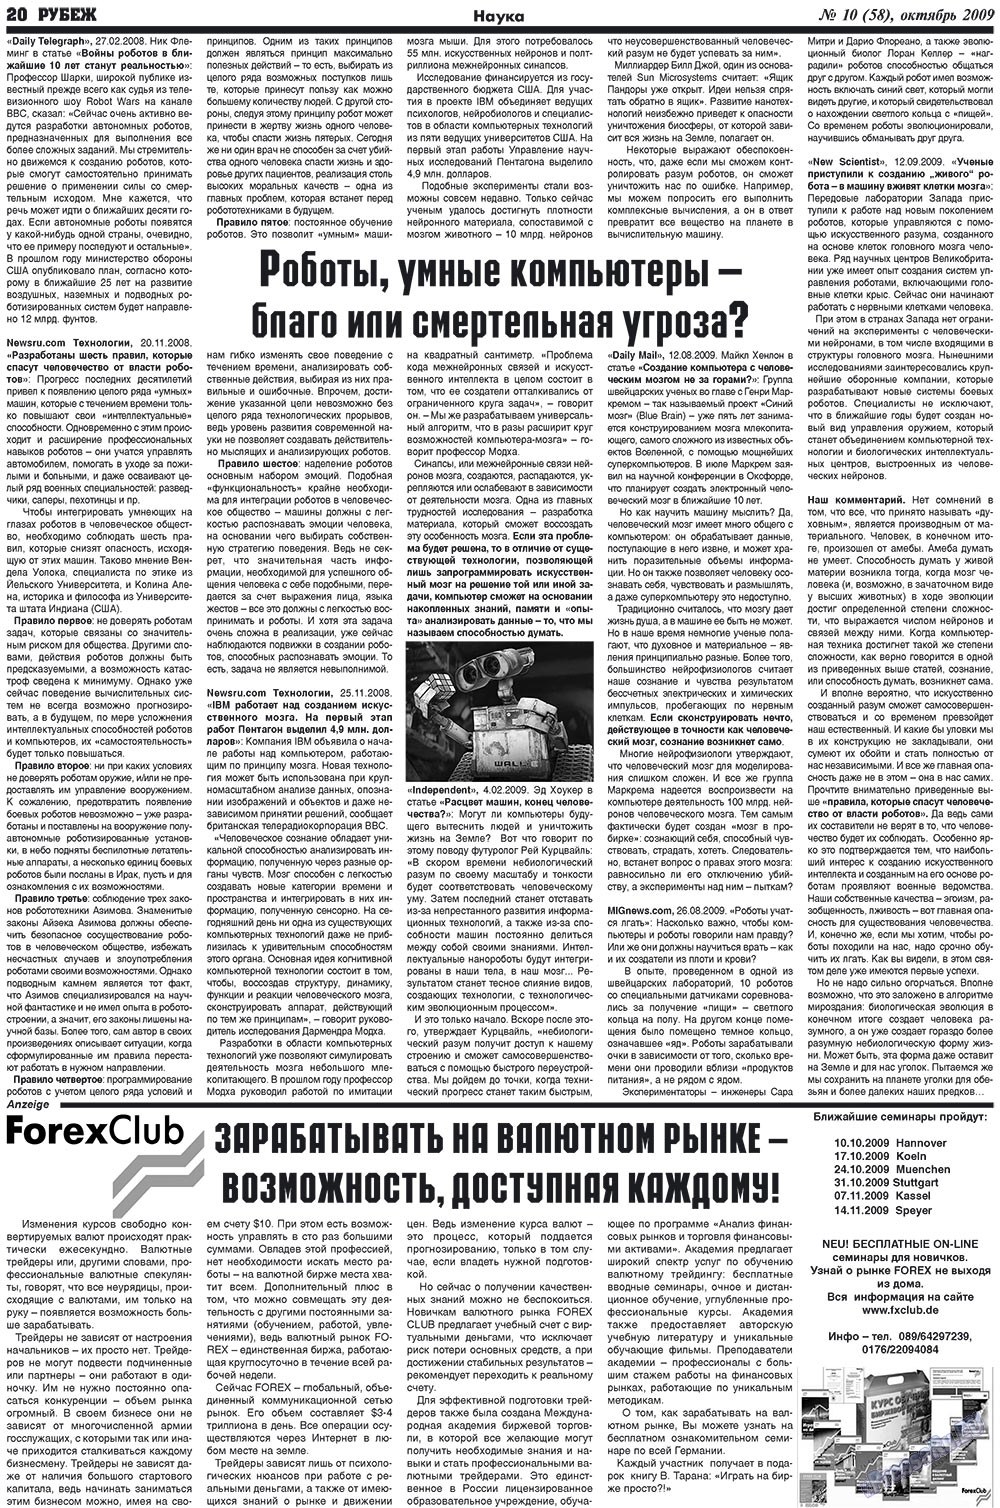 Рубеж (газета). 2009 год, номер 10, стр. 20